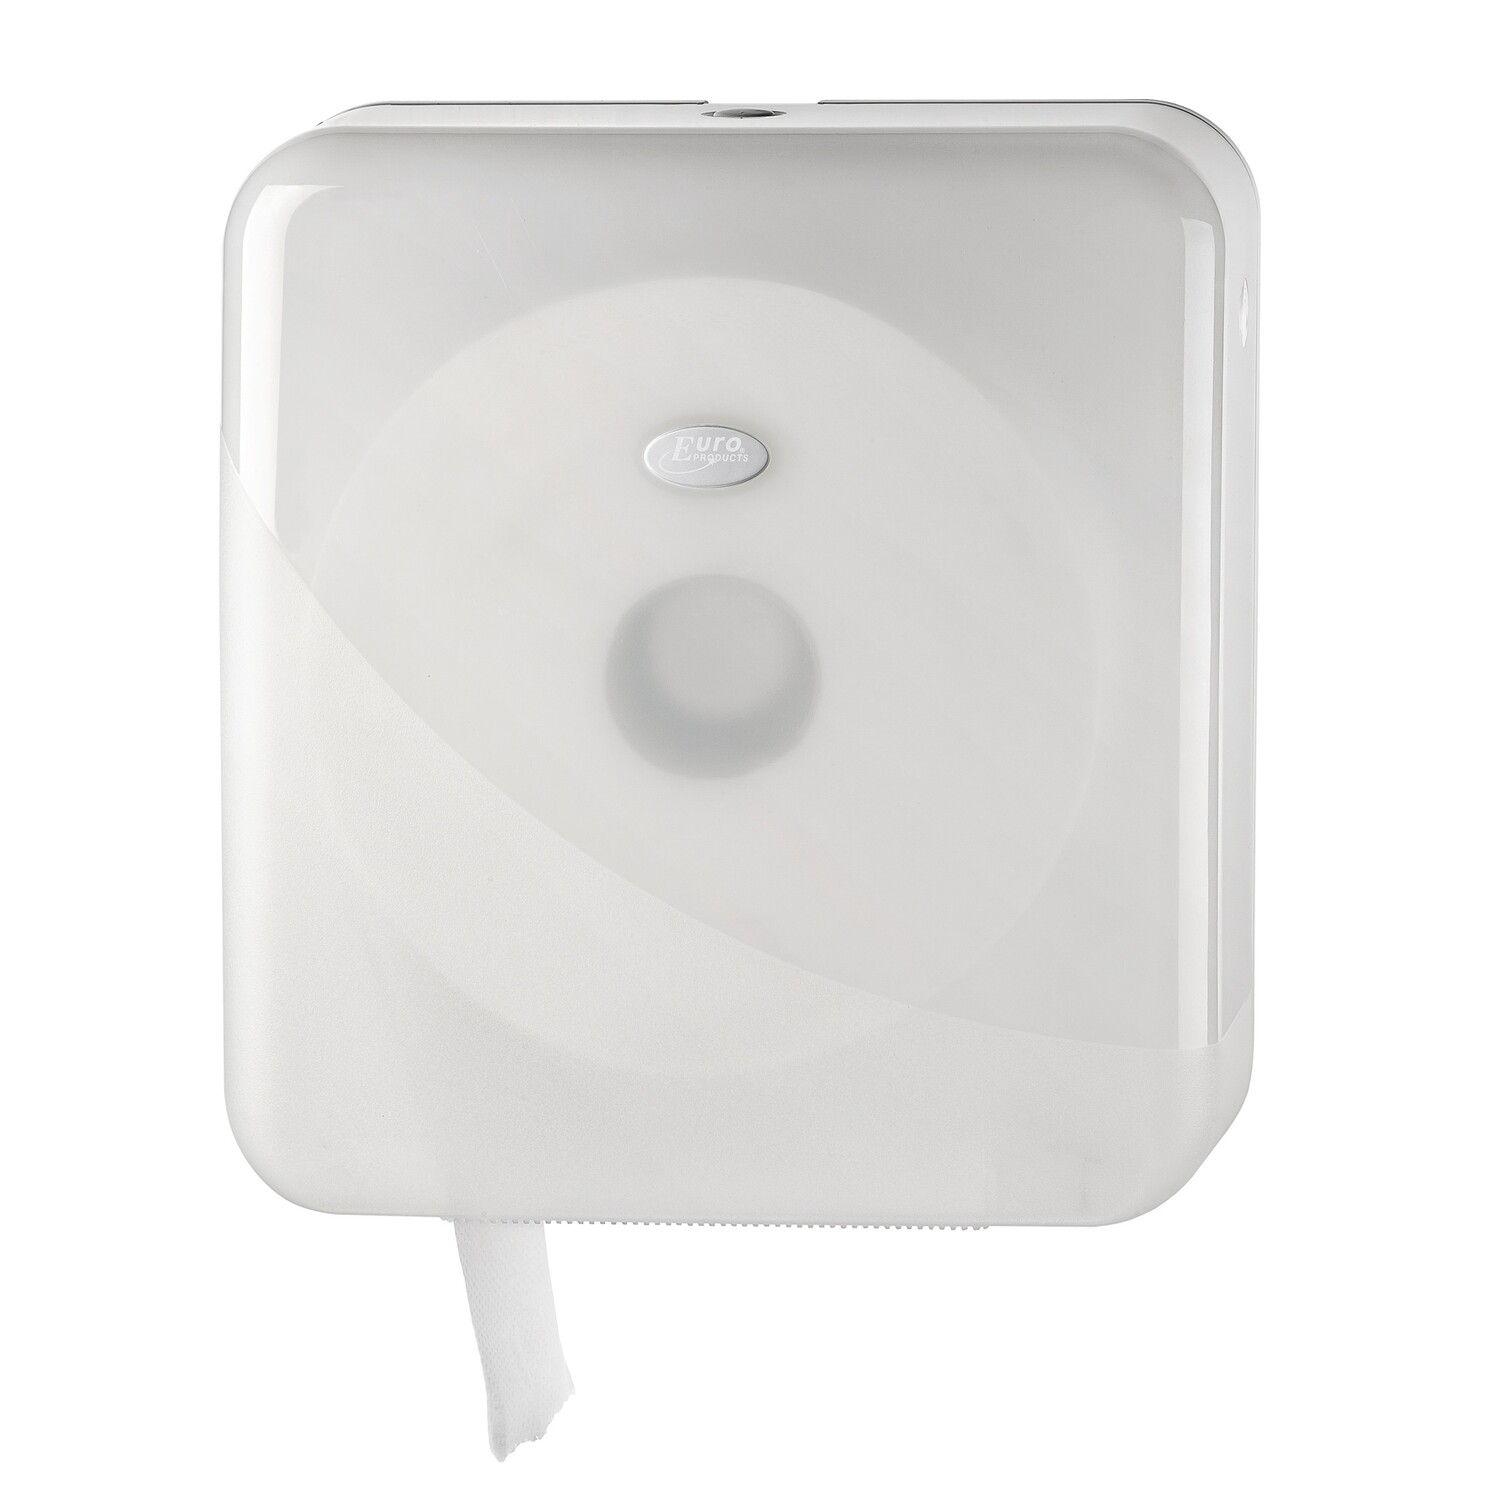 Euro Pearl White jumbo maxi toiletrolhouder, verpakt per stuk